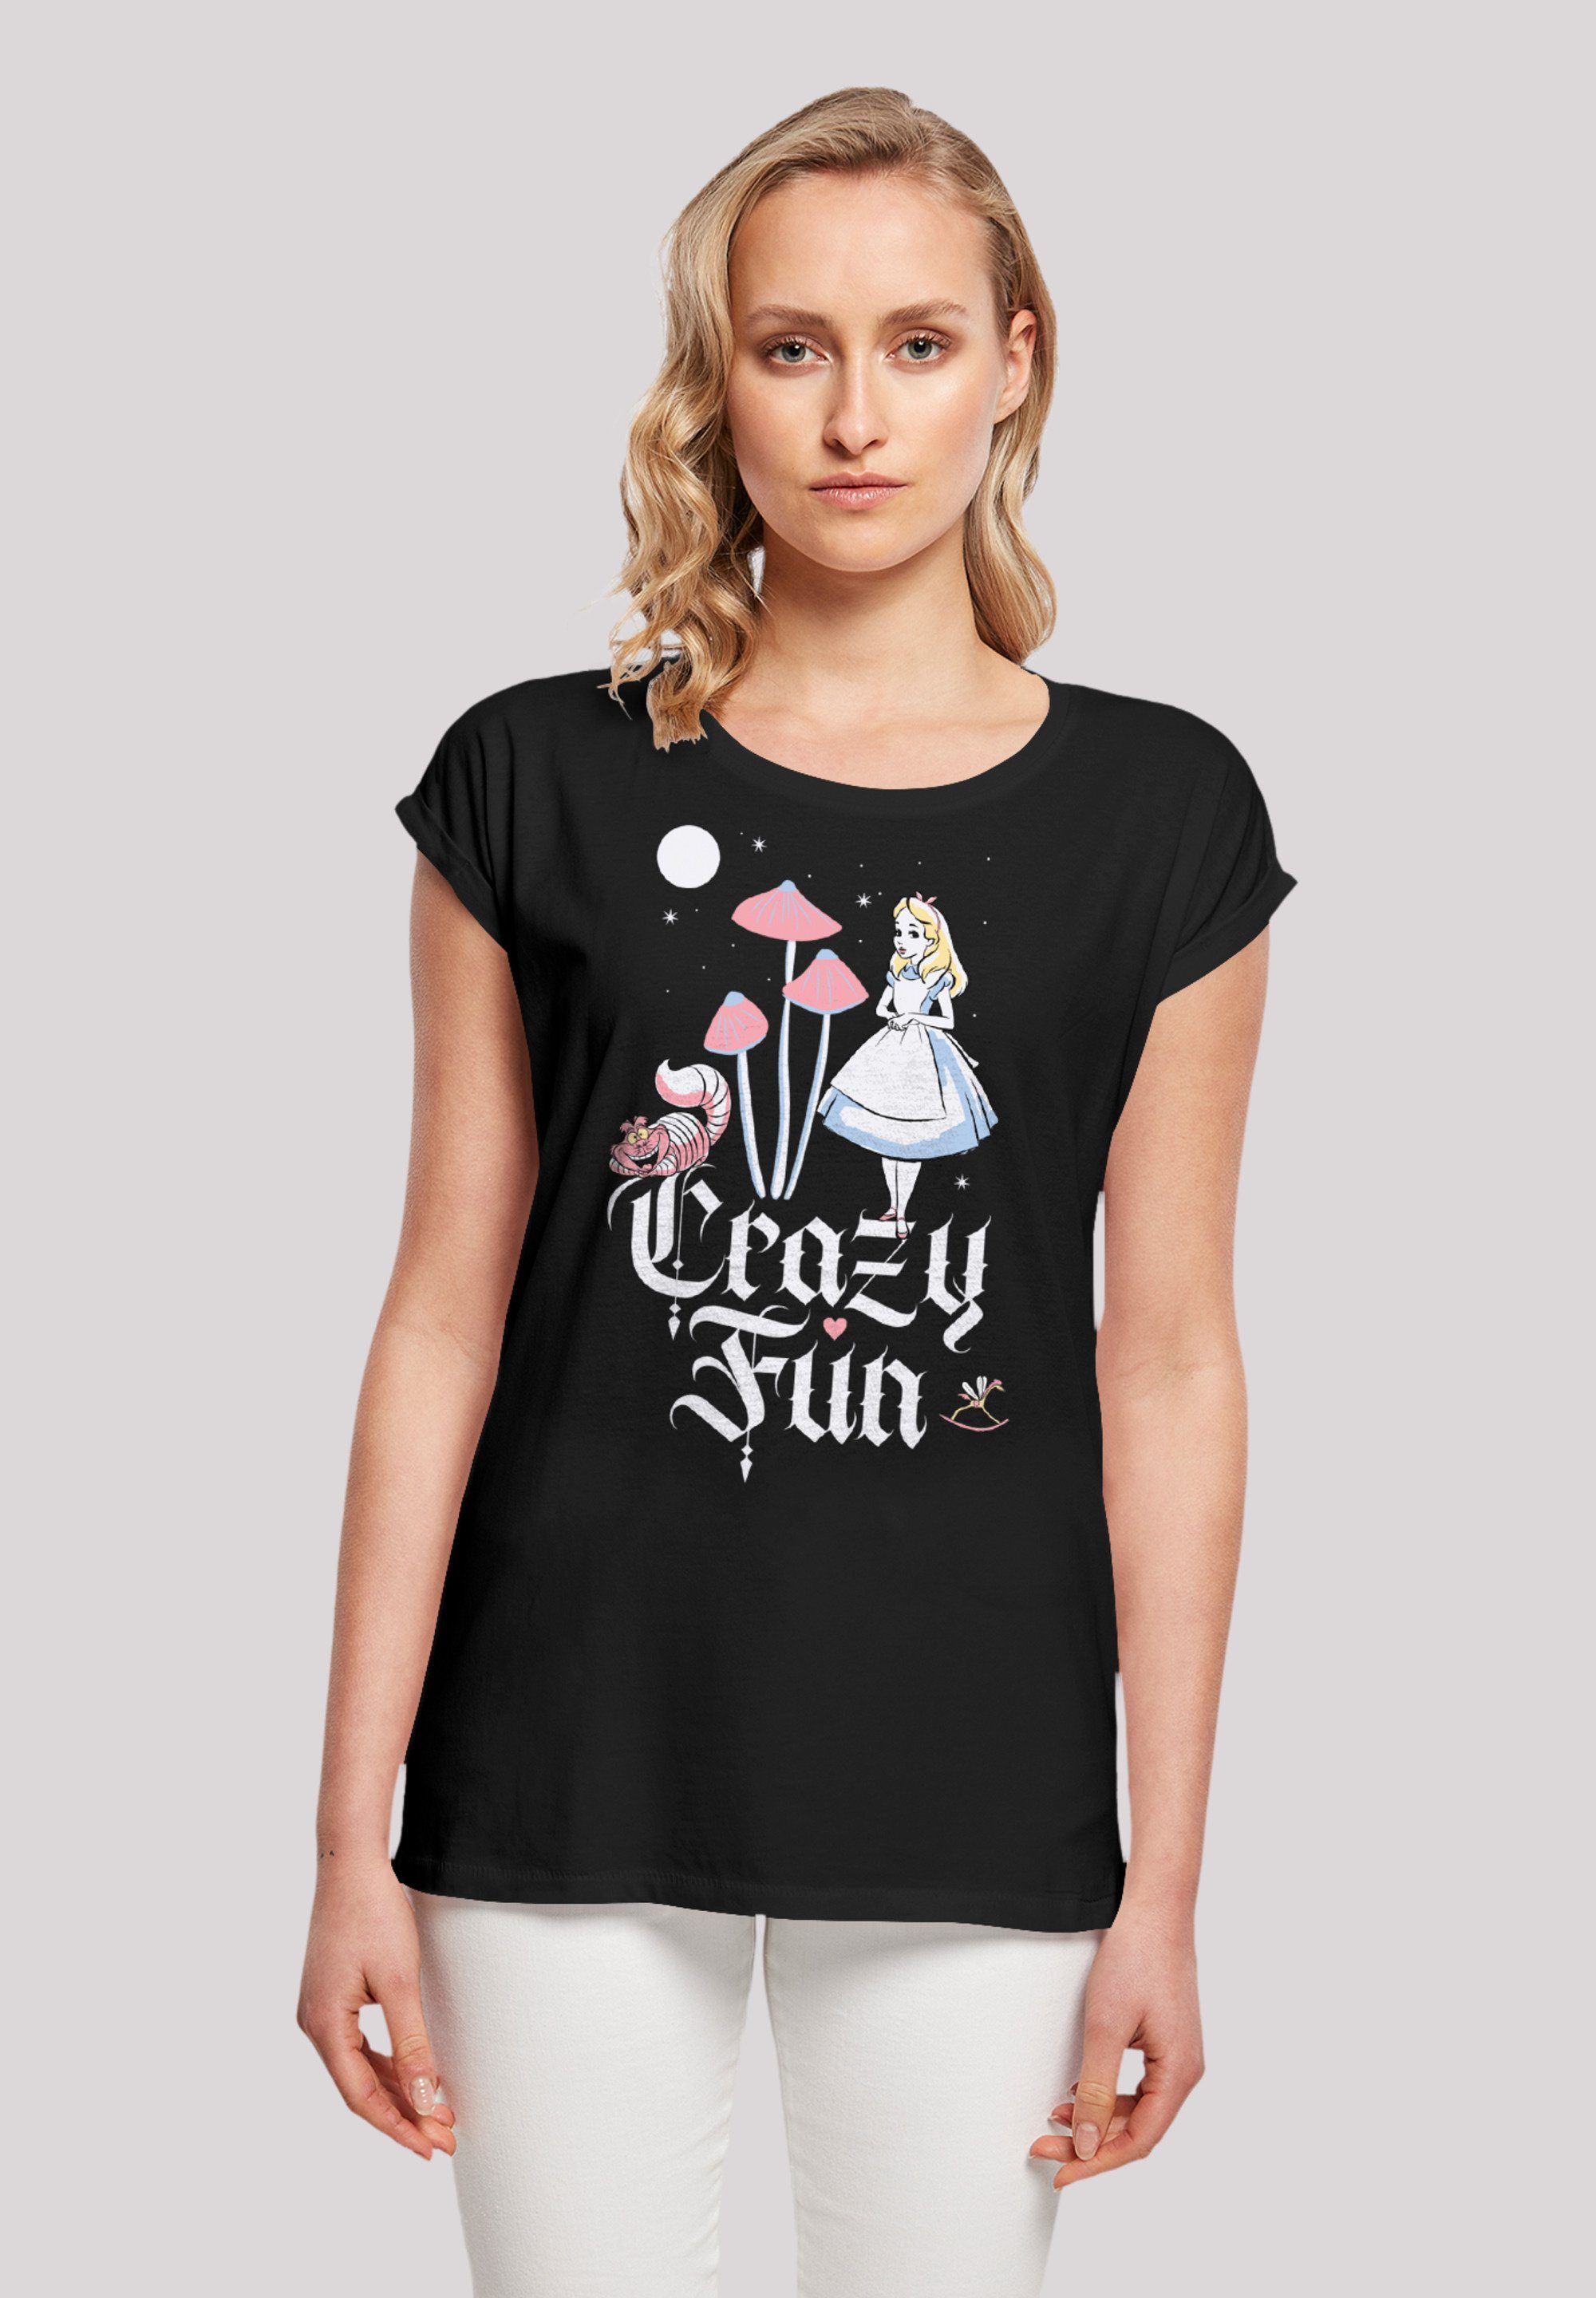 T-Shirt Alice Sehr hohem Premium Baumwollstoff mit Tragekomfort Wunderland Qualität, Crazy Disney F4NT4STIC weicher Fun im